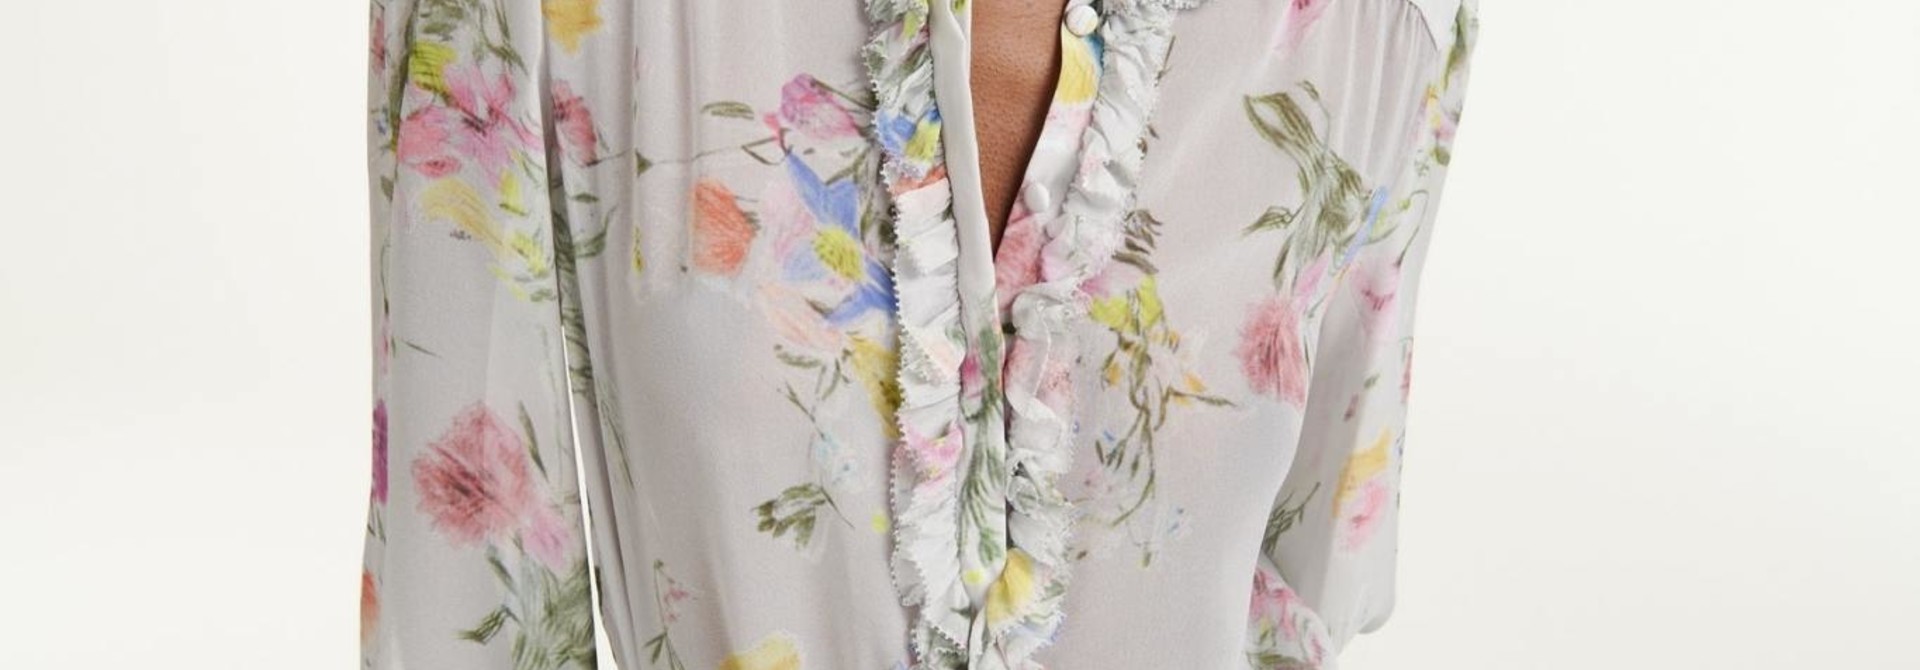 Floral romance blouse Dorothee Schumacher